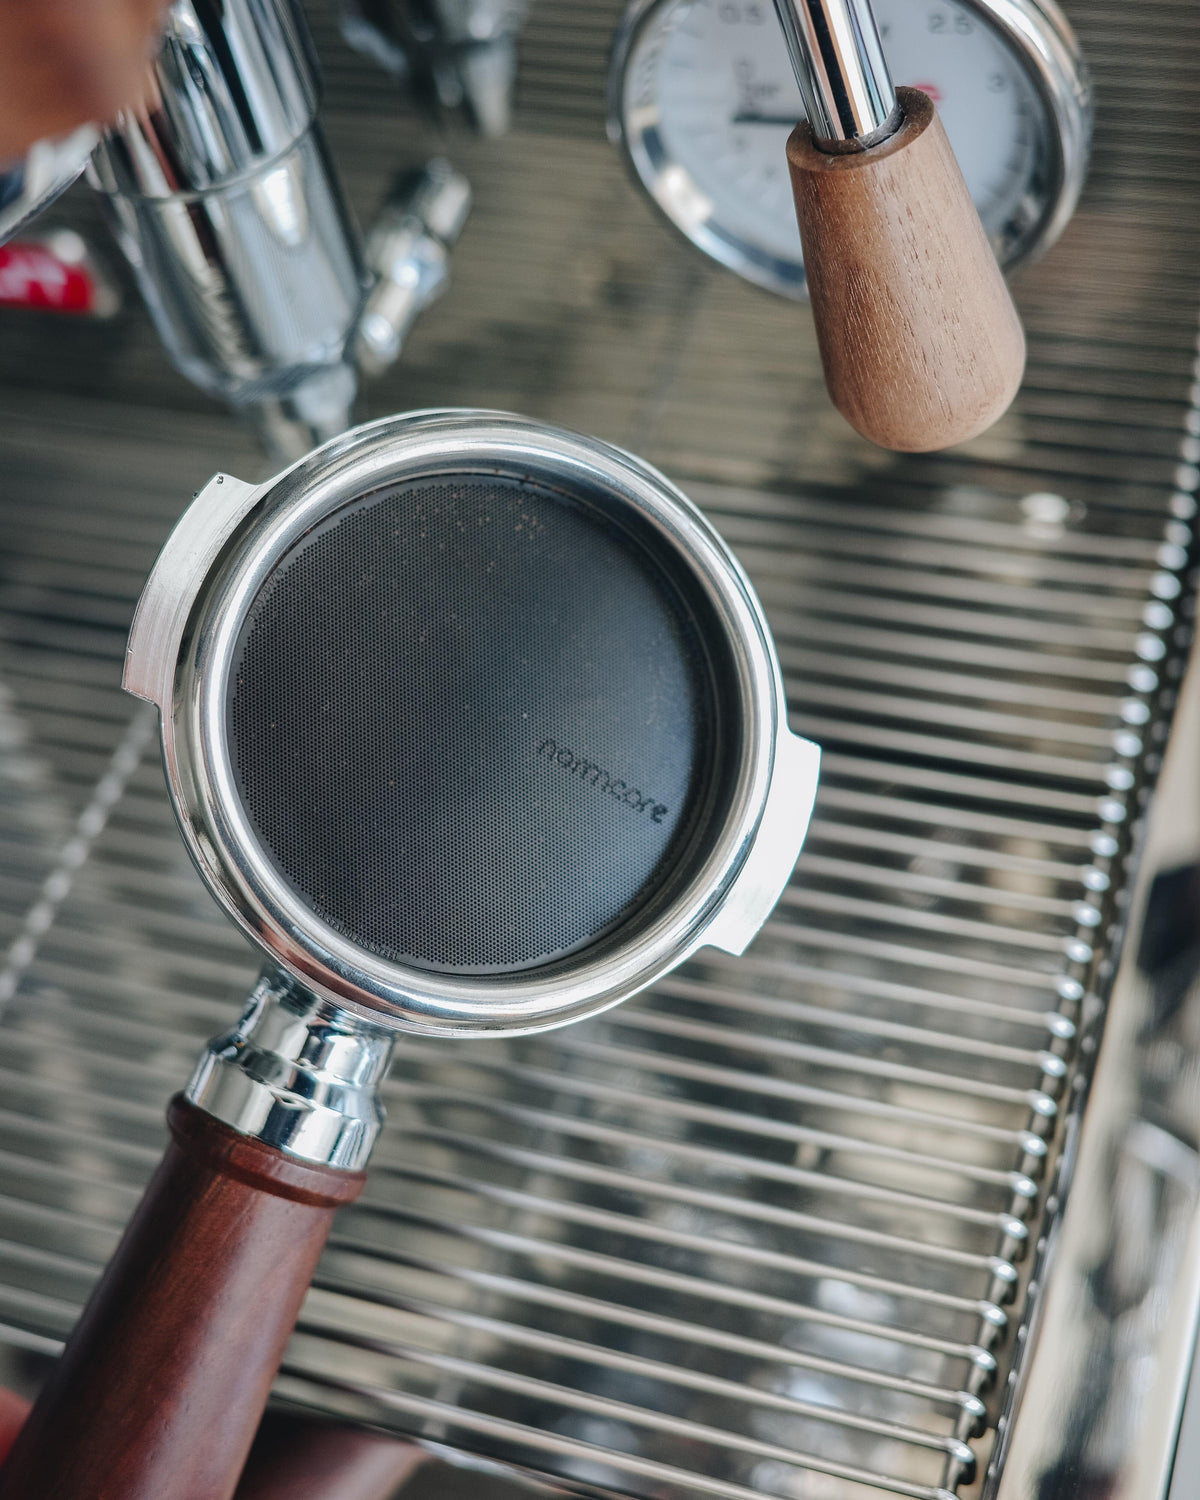 Normcore Premium Bottomless Porte-filtre 58 mm pour E61 – Coffee